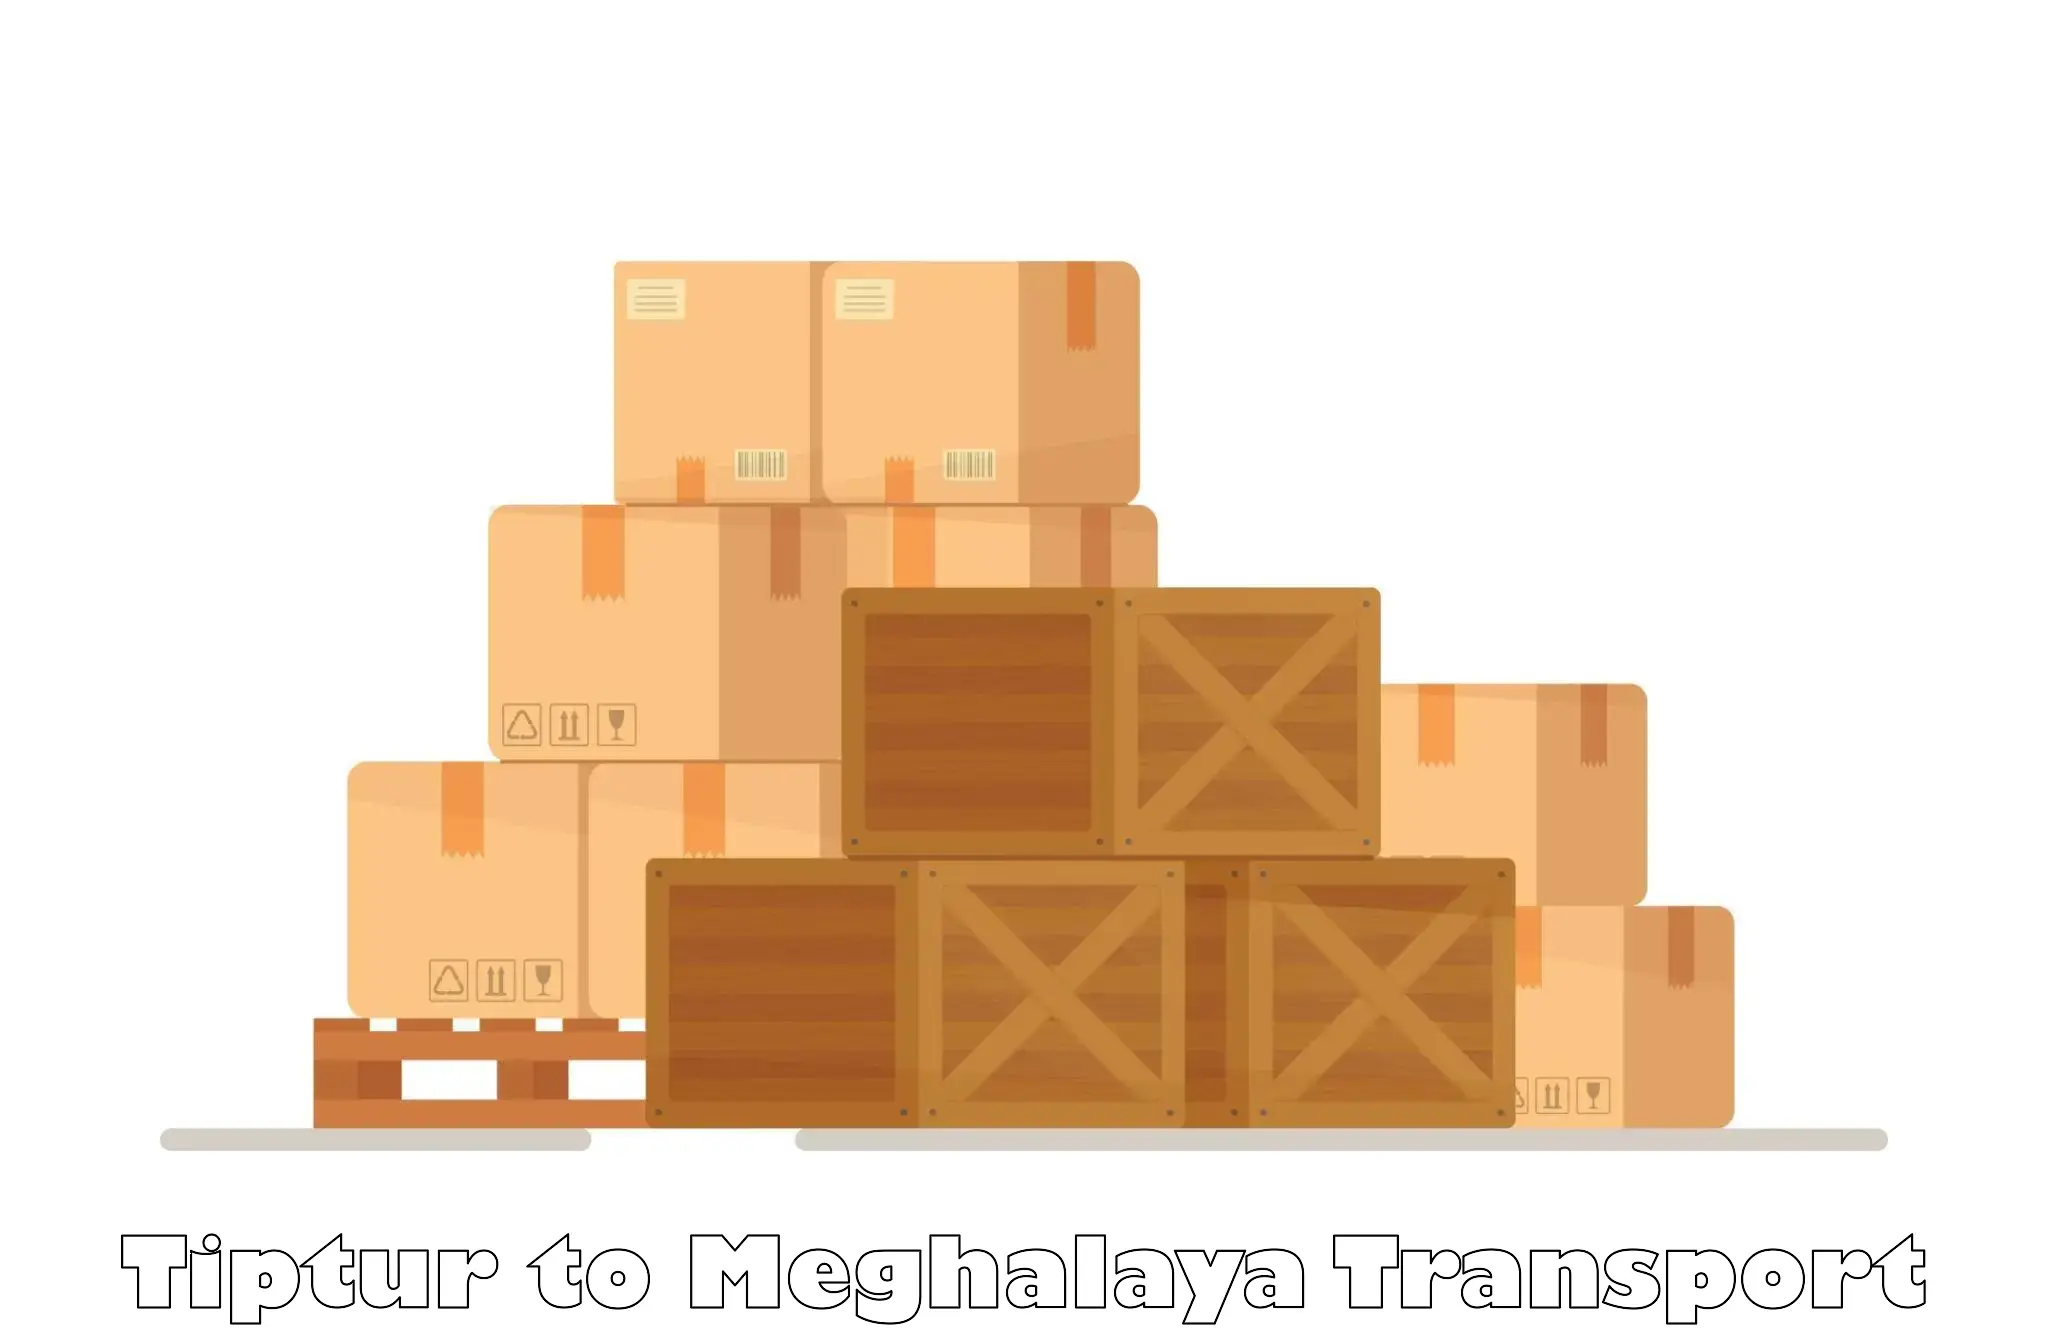 Shipping services Tiptur to Tikrikilla